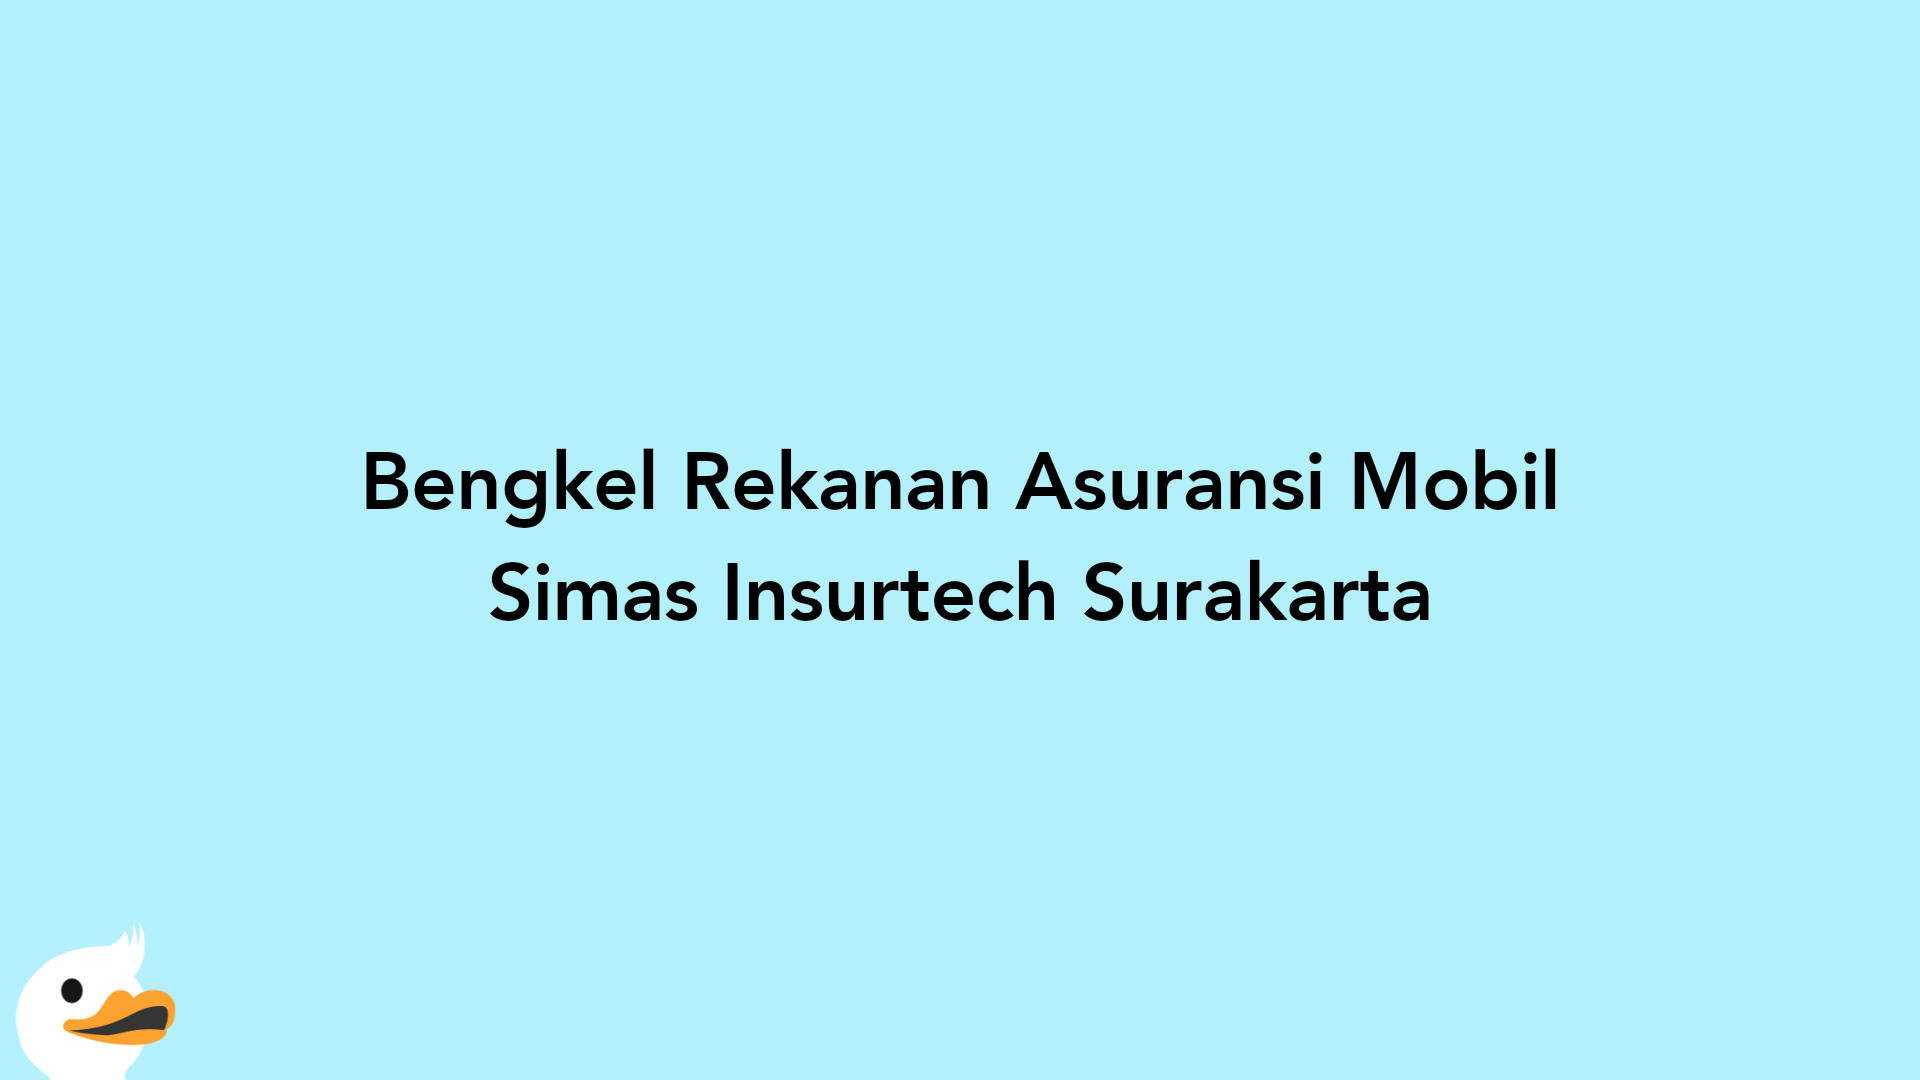 Bengkel Rekanan Asuransi Mobil Simas Insurtech Surakarta